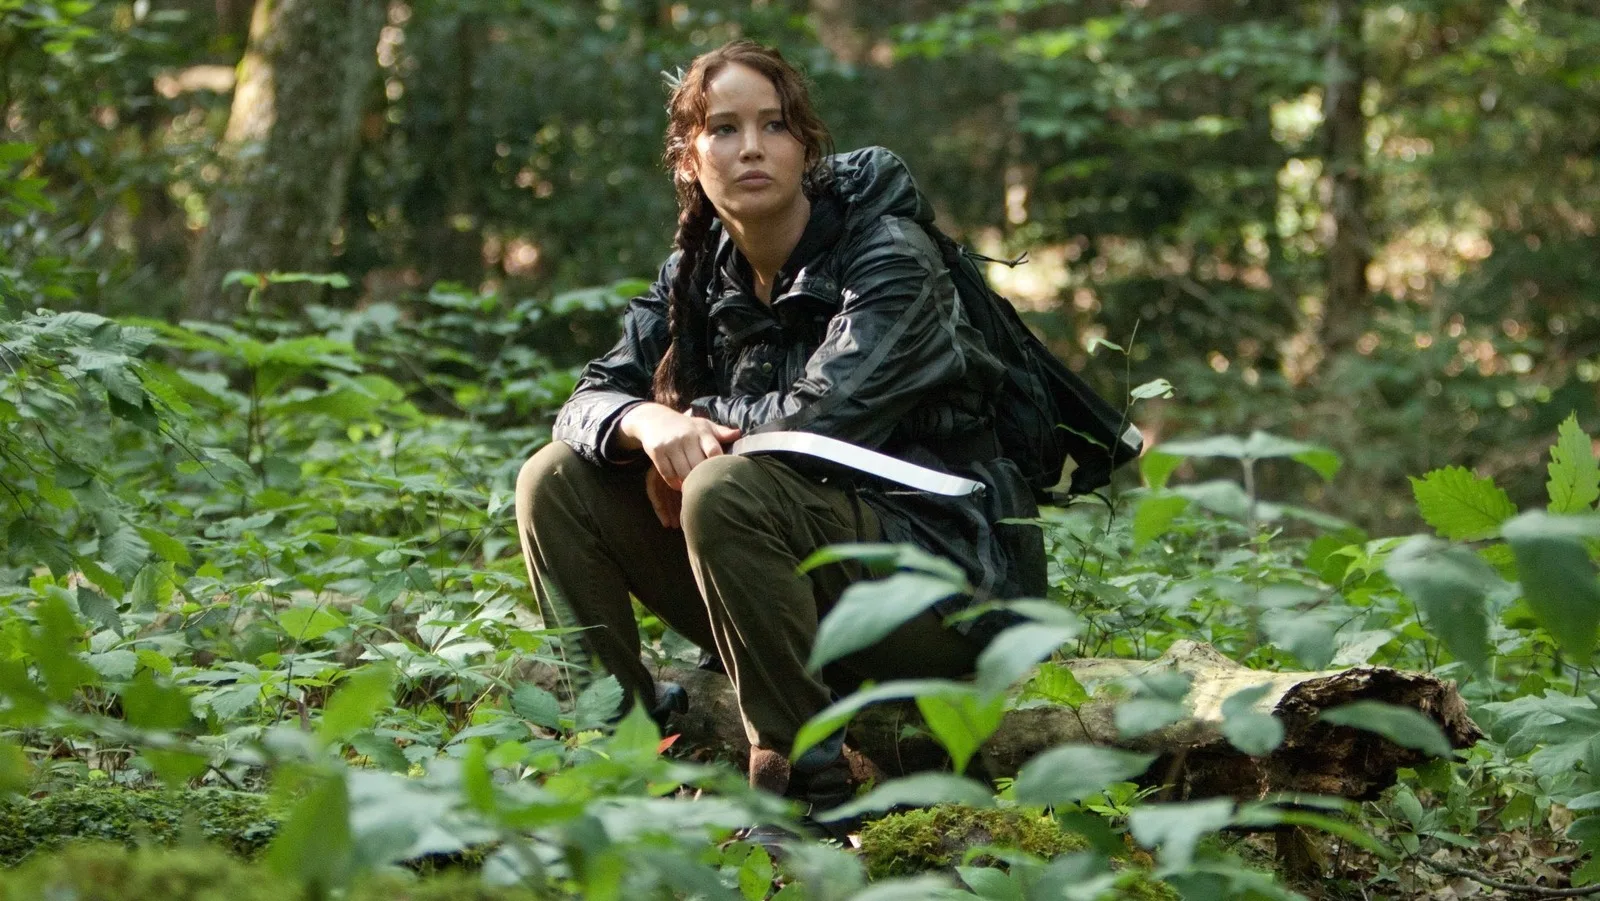 Jennifer Lawrence não retornará a "Jogos Vorazes", diz produtora